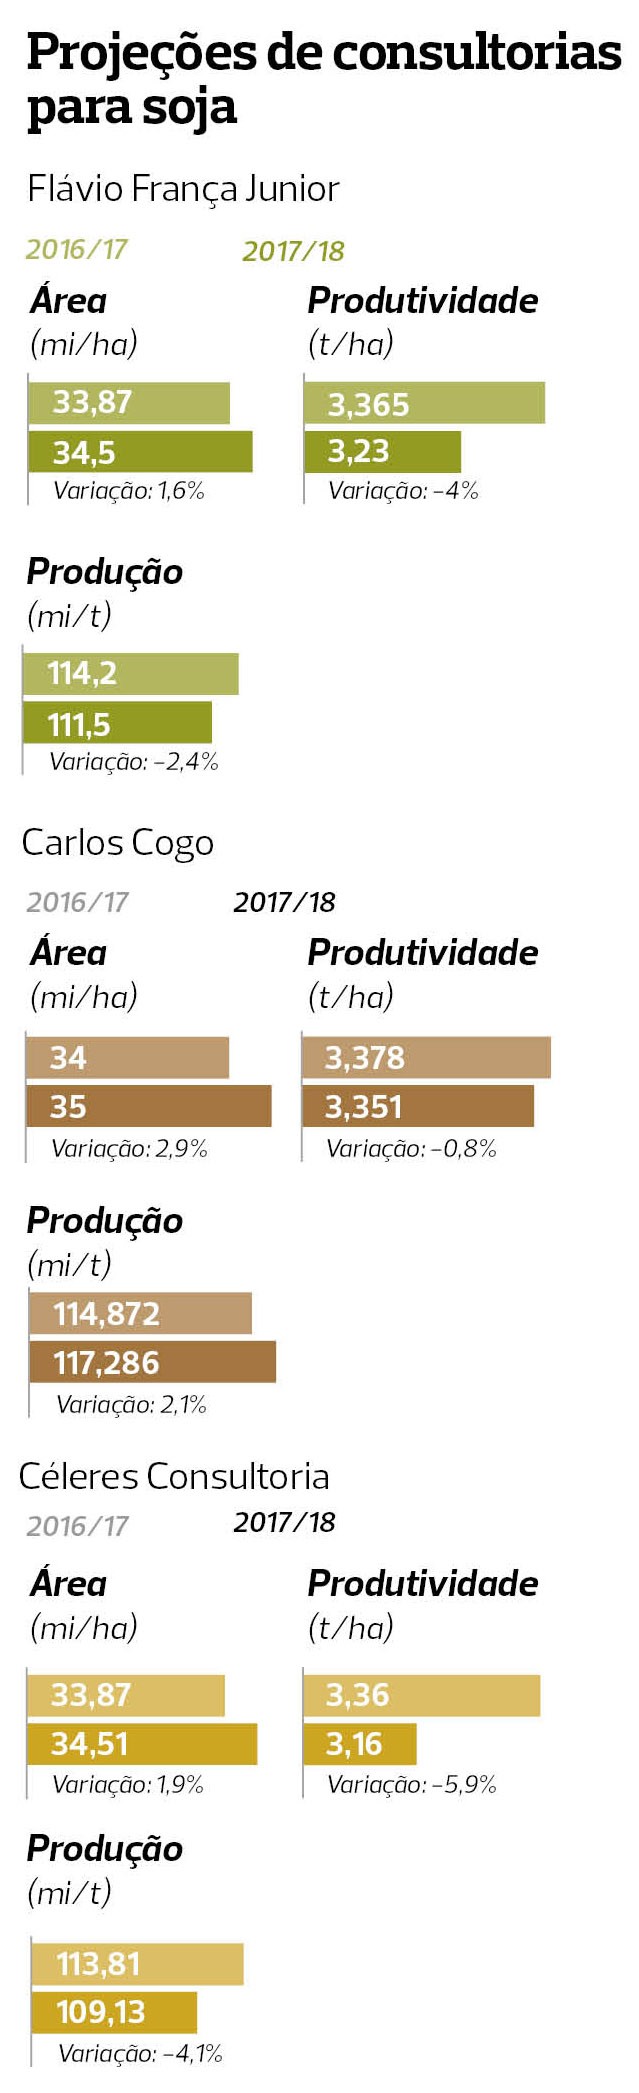 safra-agro18 (Foto: Consultorias/Elaboração:Globo Rural)